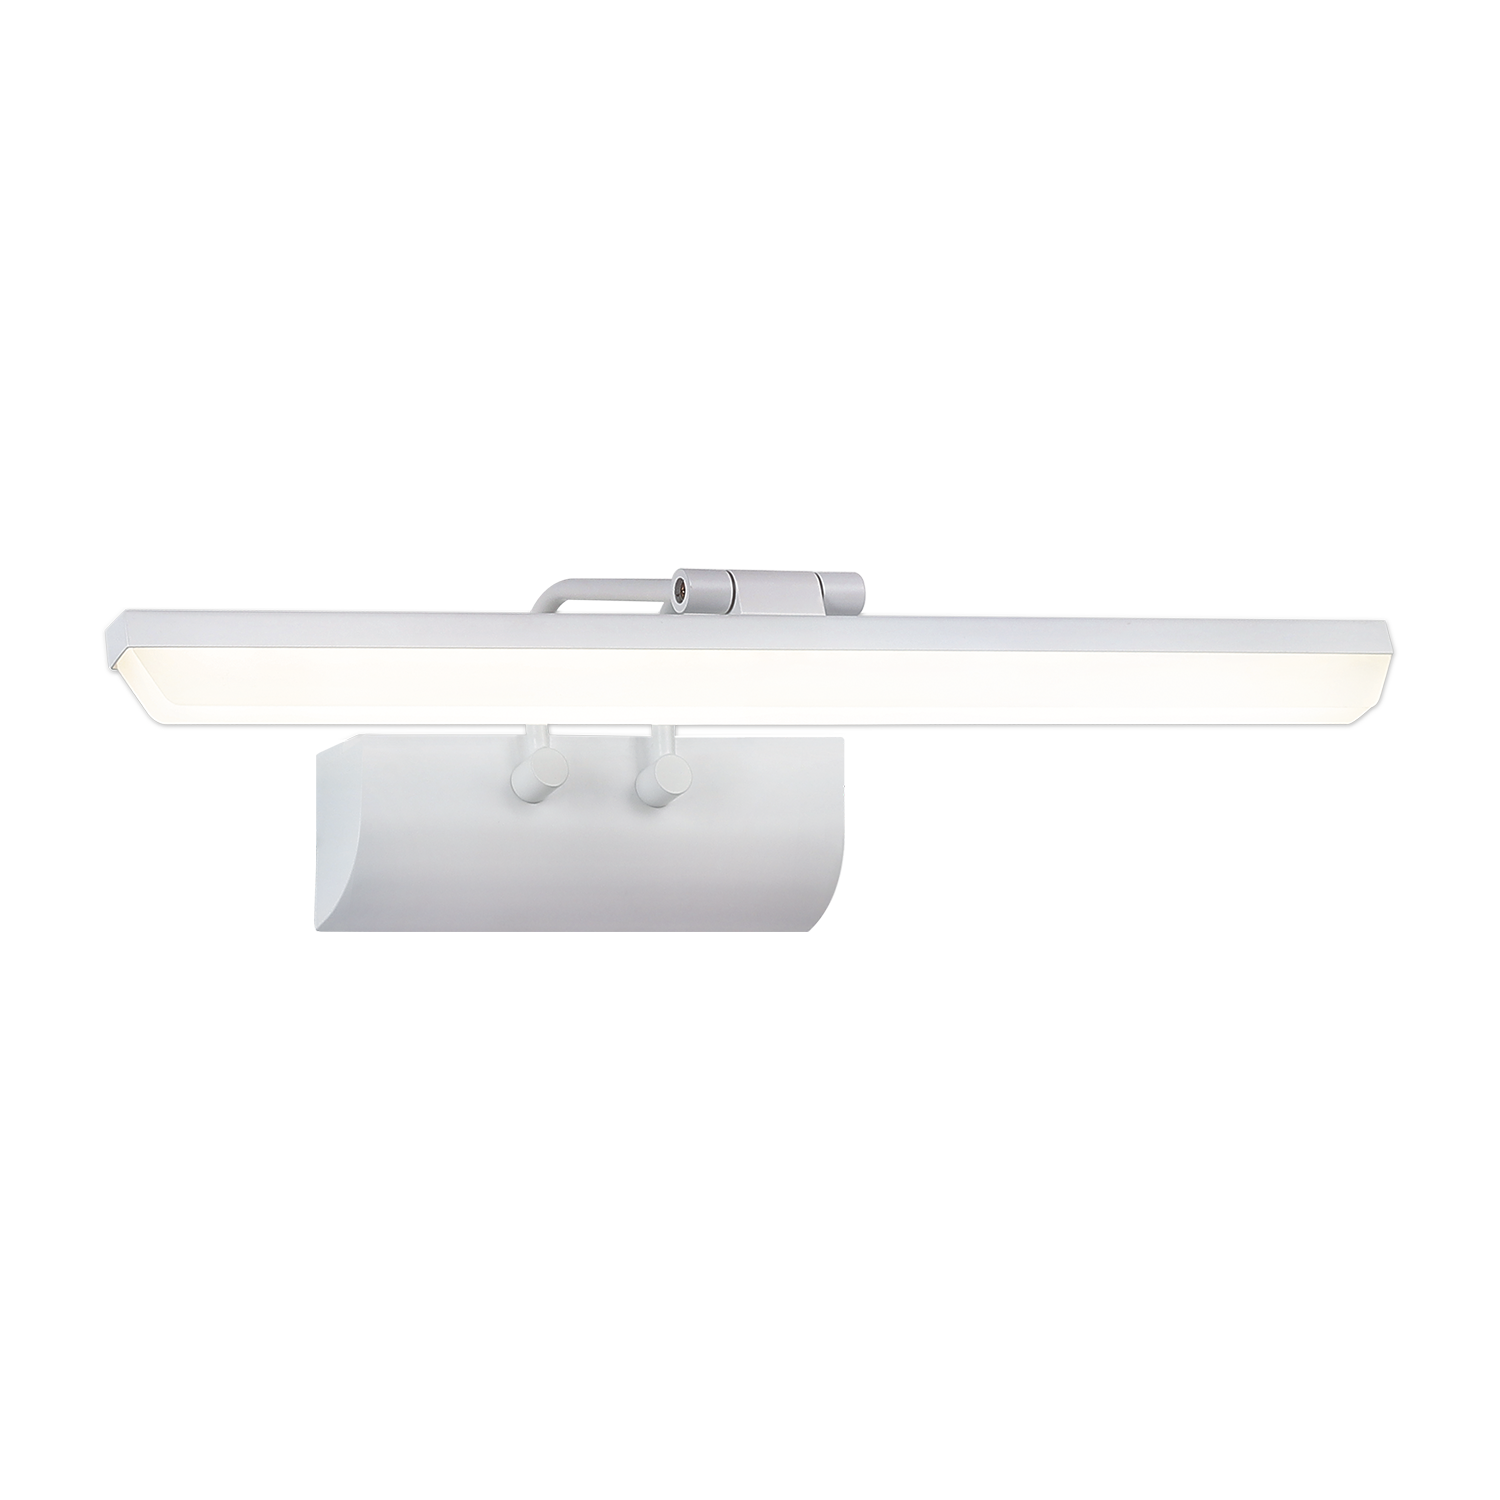 Настенный светодиодный светильник Gauss Medea BR021 7W 460lm 200-240V 440mm LED 1/20